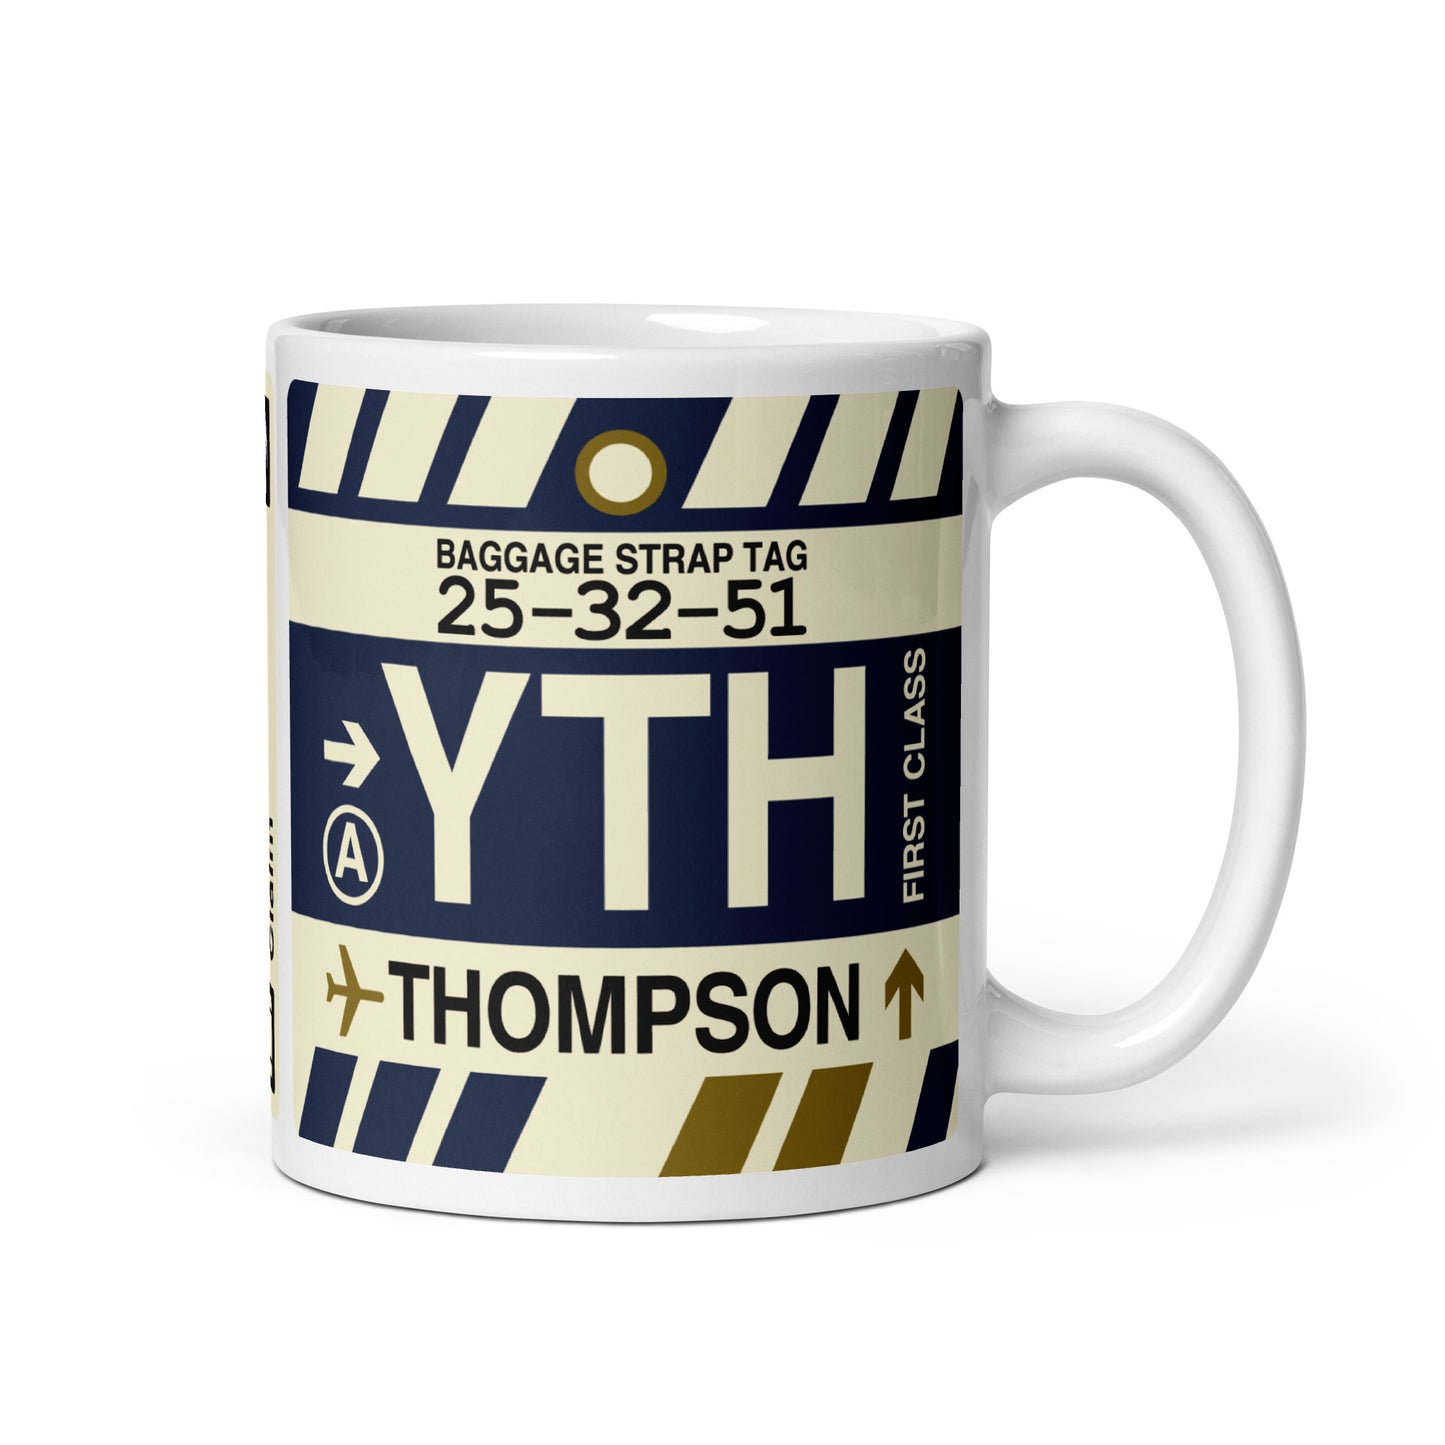 Travel Gift Coffee Mug • YTH Thompson • YHM Designs - Image 01